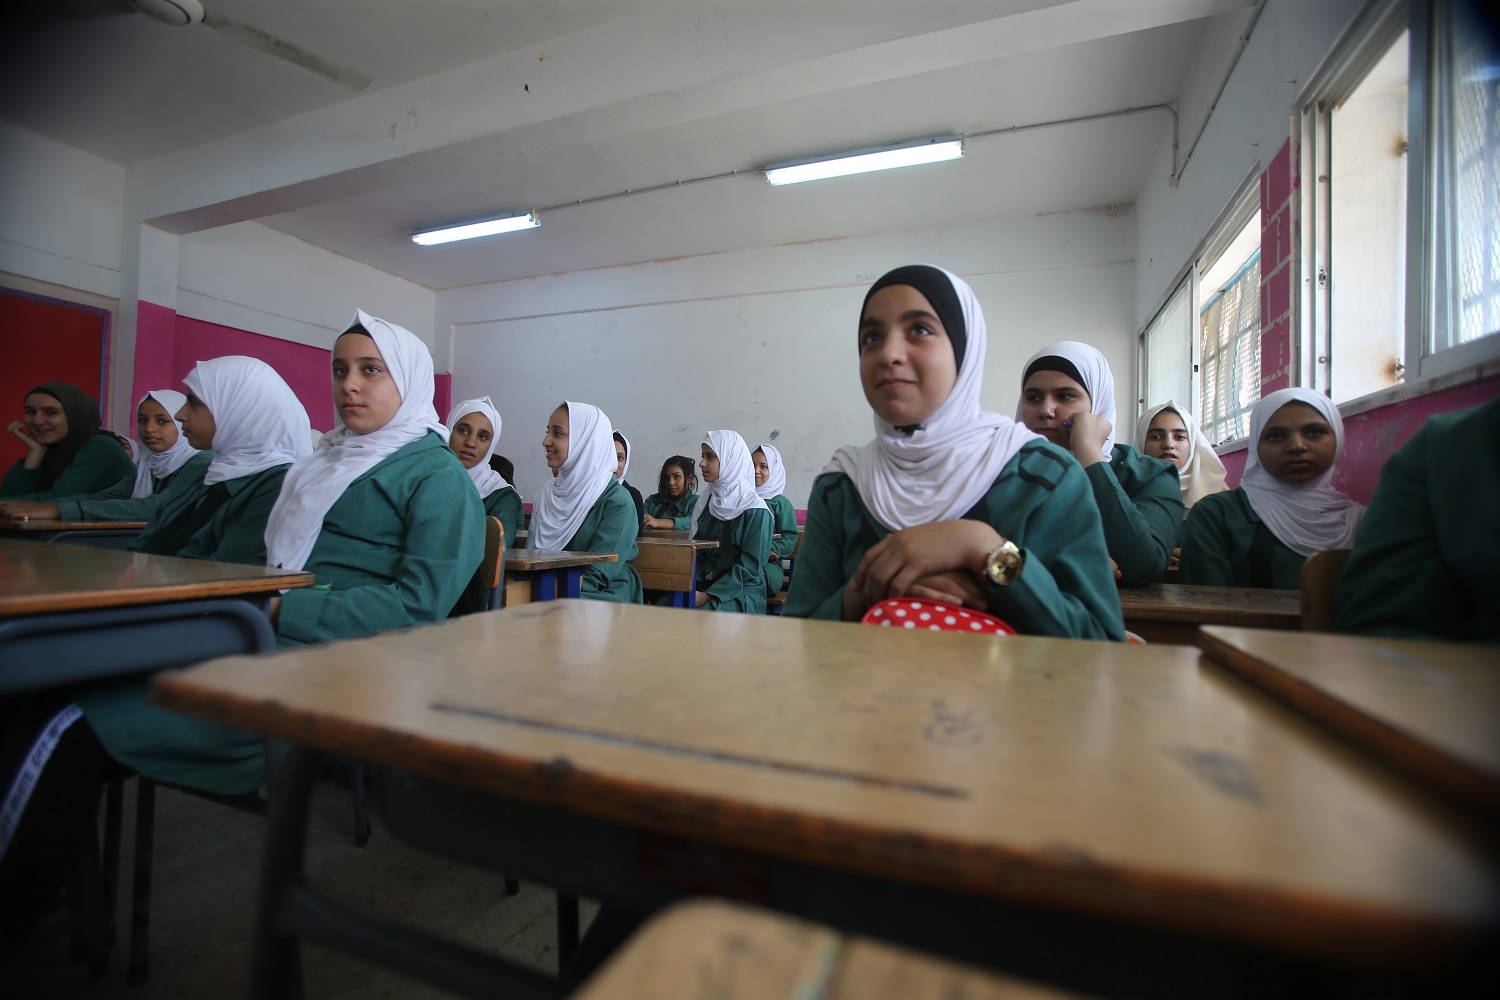 طالبات في مدرسة تابعة لوكالة الأمم المتحدة لغوث وتشغيل اللاجئين الفلسطينيين "أونروا" في عمّان. صلاح ملكاوي / المملكة